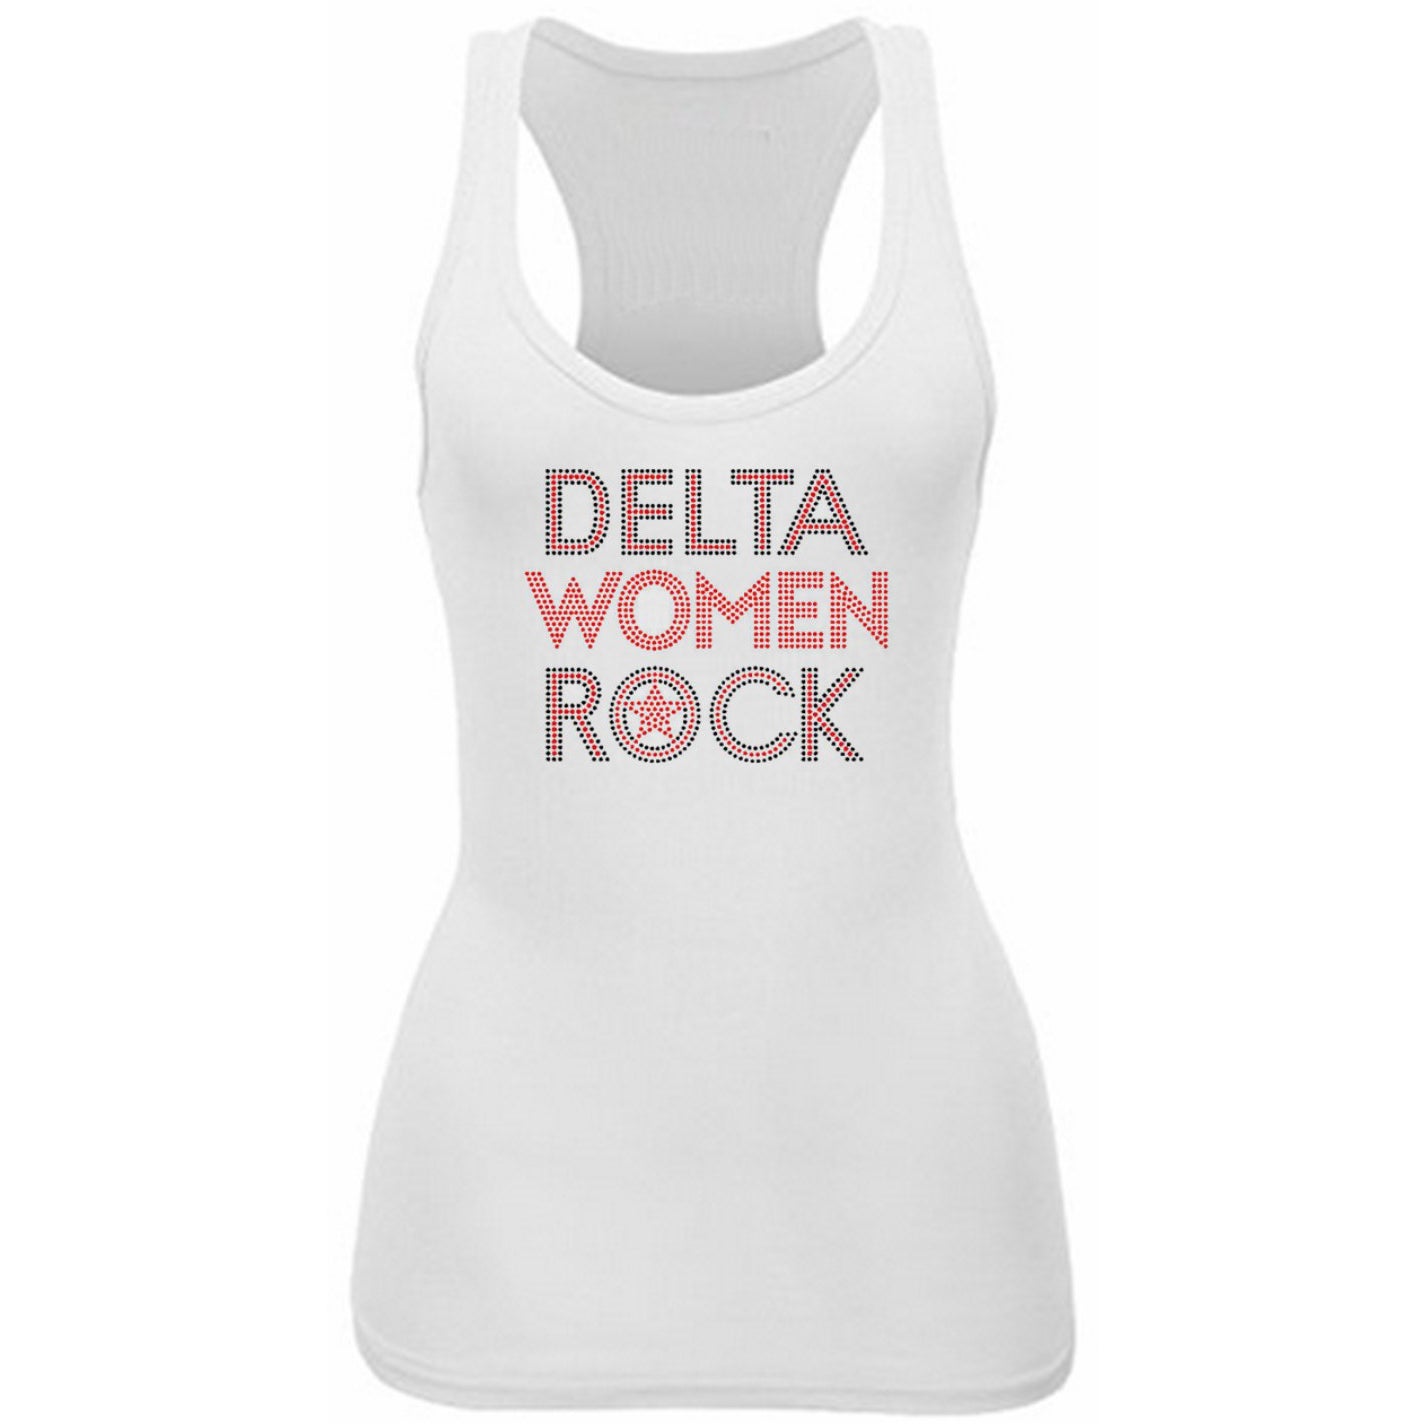 Delta Women Rock Rhinestone Tank Top